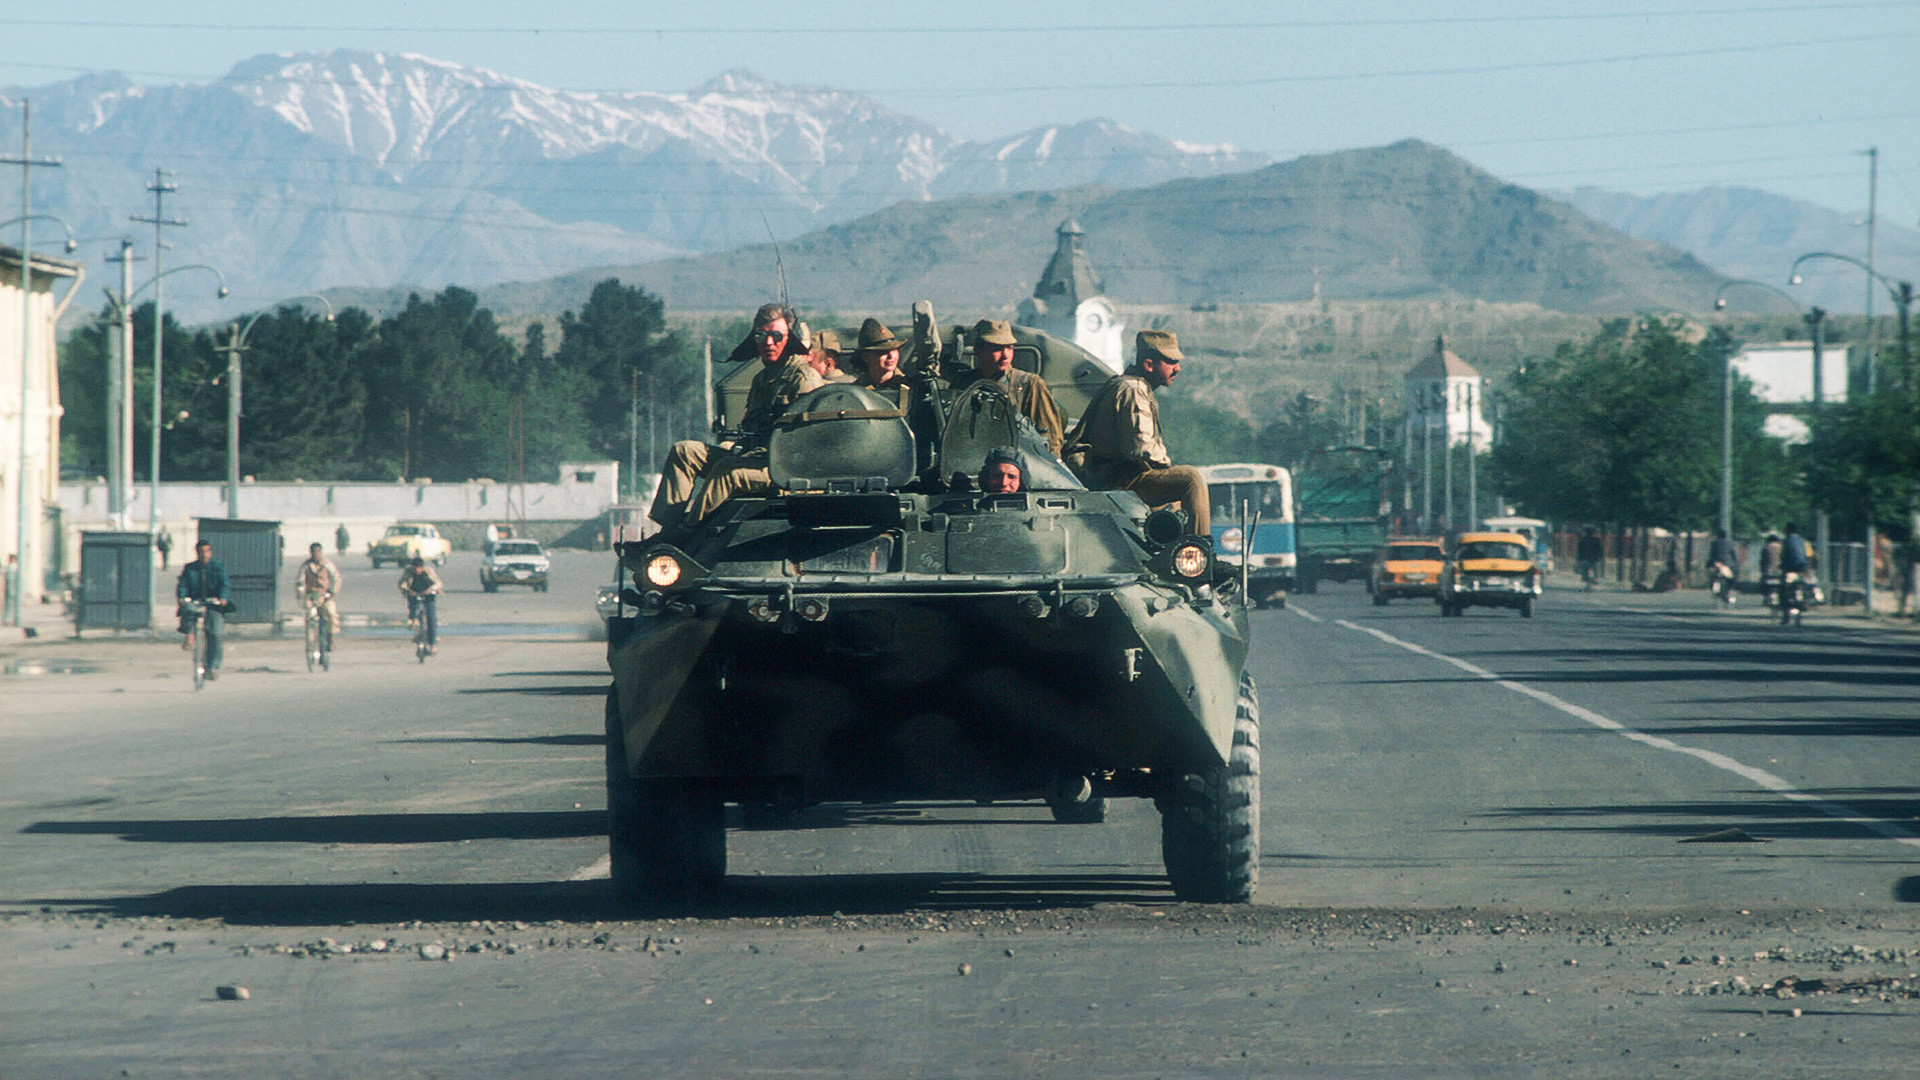 Sovjetski tenk partolira ulicom u Kabulu, Afganistan.